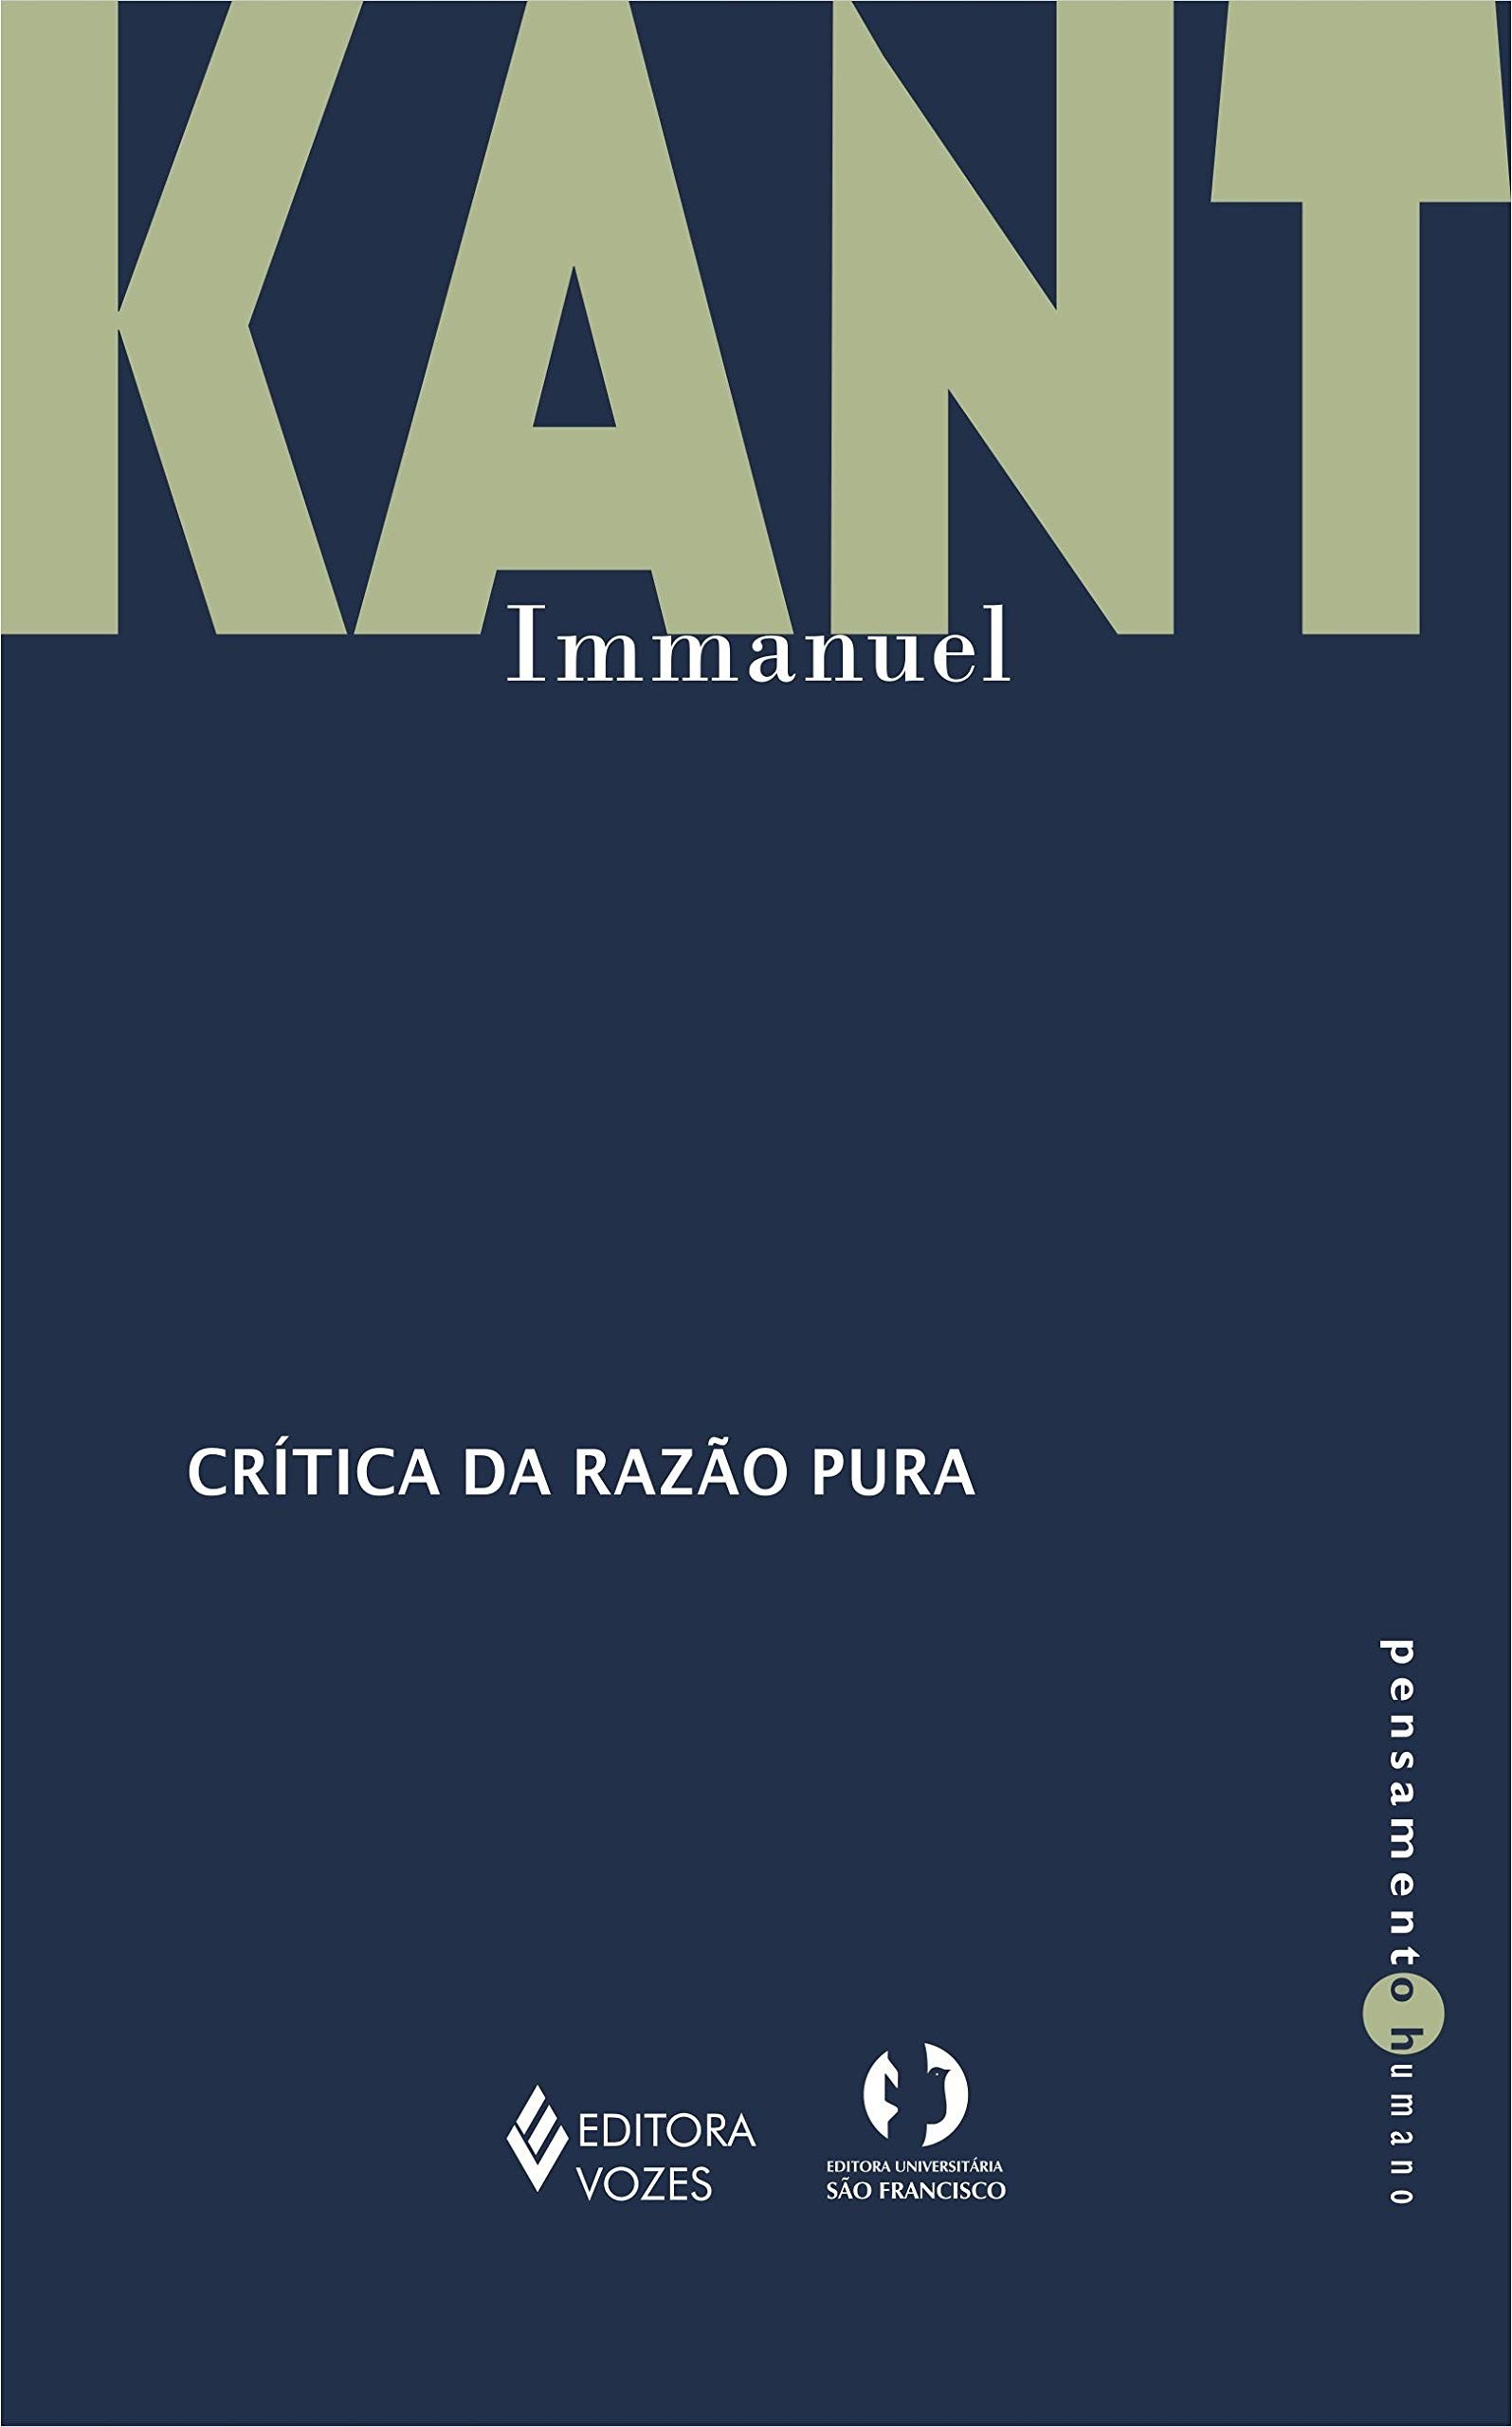 Crítica da Razão Pura, de Immanuel Kant (Foto: Divulgação)